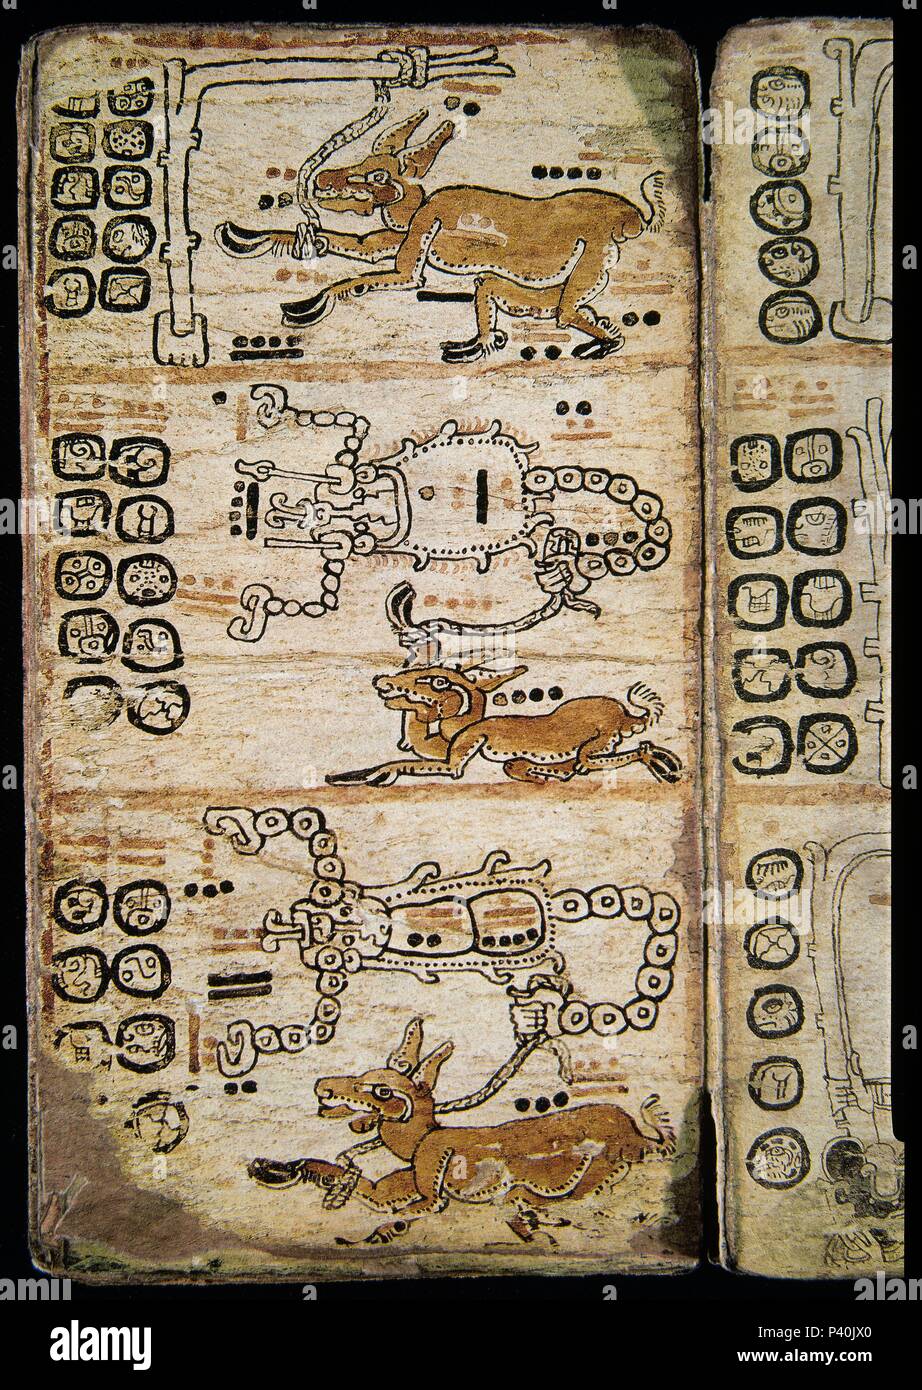 À partir de la page du codex de Madrid (aussi connu sous le nom de Codex Tro-Cortesianus). La culture maya . Créatures de fantaisie. 13e-15e siècles. Madrid, Musée de l'Amérique. Lieu : MUSÉE DE L'AMÉRIQUE - COLECCION, MADRID, ESPAGNE. Banque D'Images